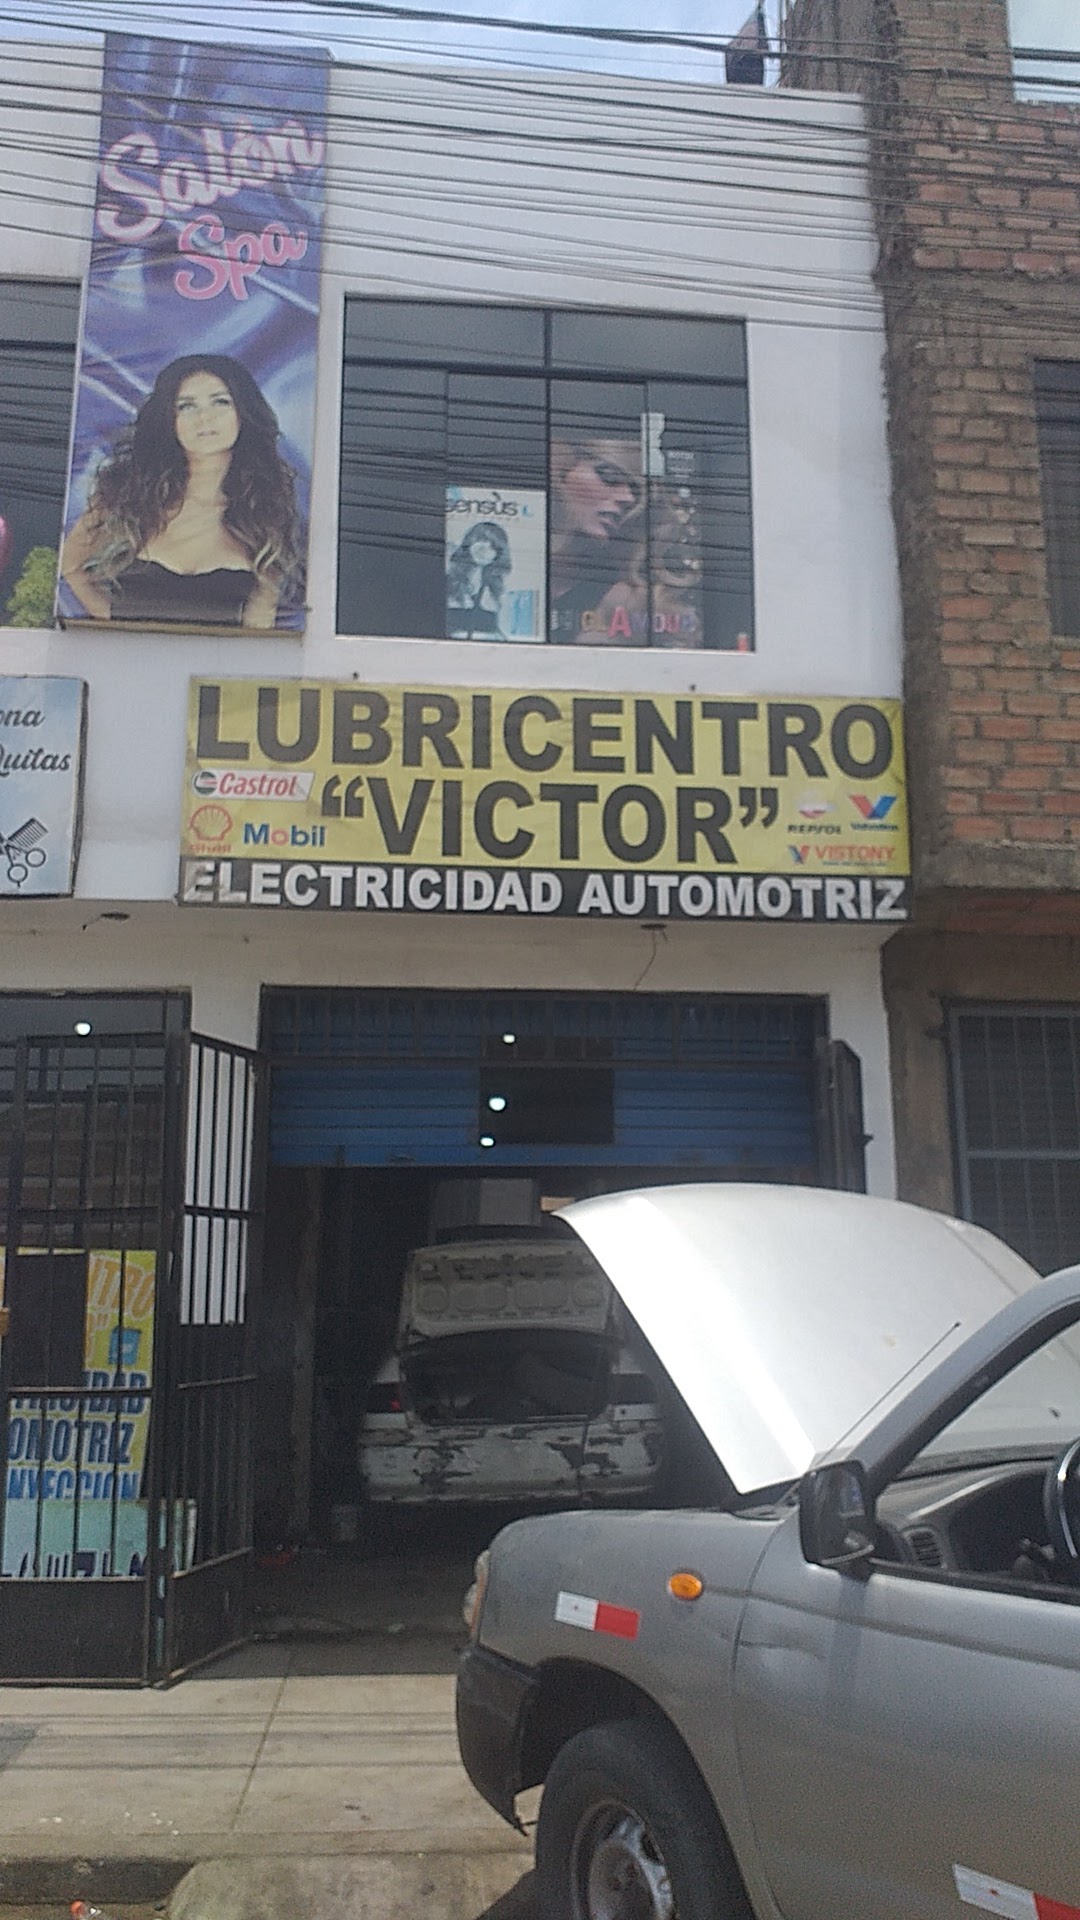 Lubricentro victorElectricidad Automotriz